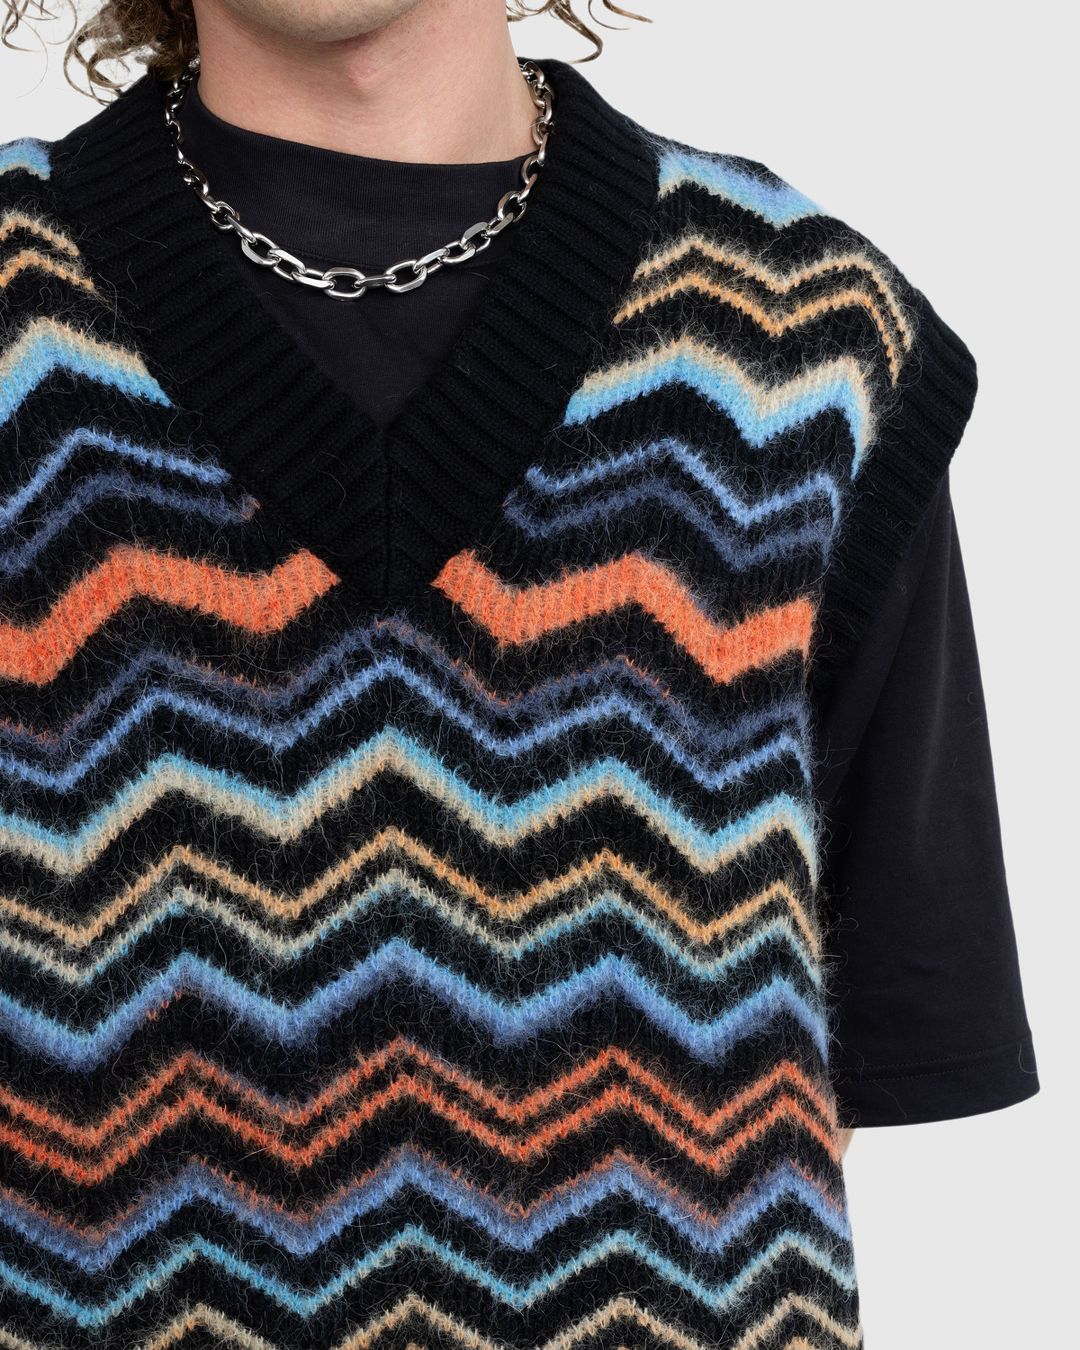 Missoni – Zig Zag Knit Vest Black/Orange/Light Blue | Highsnobiety Shop